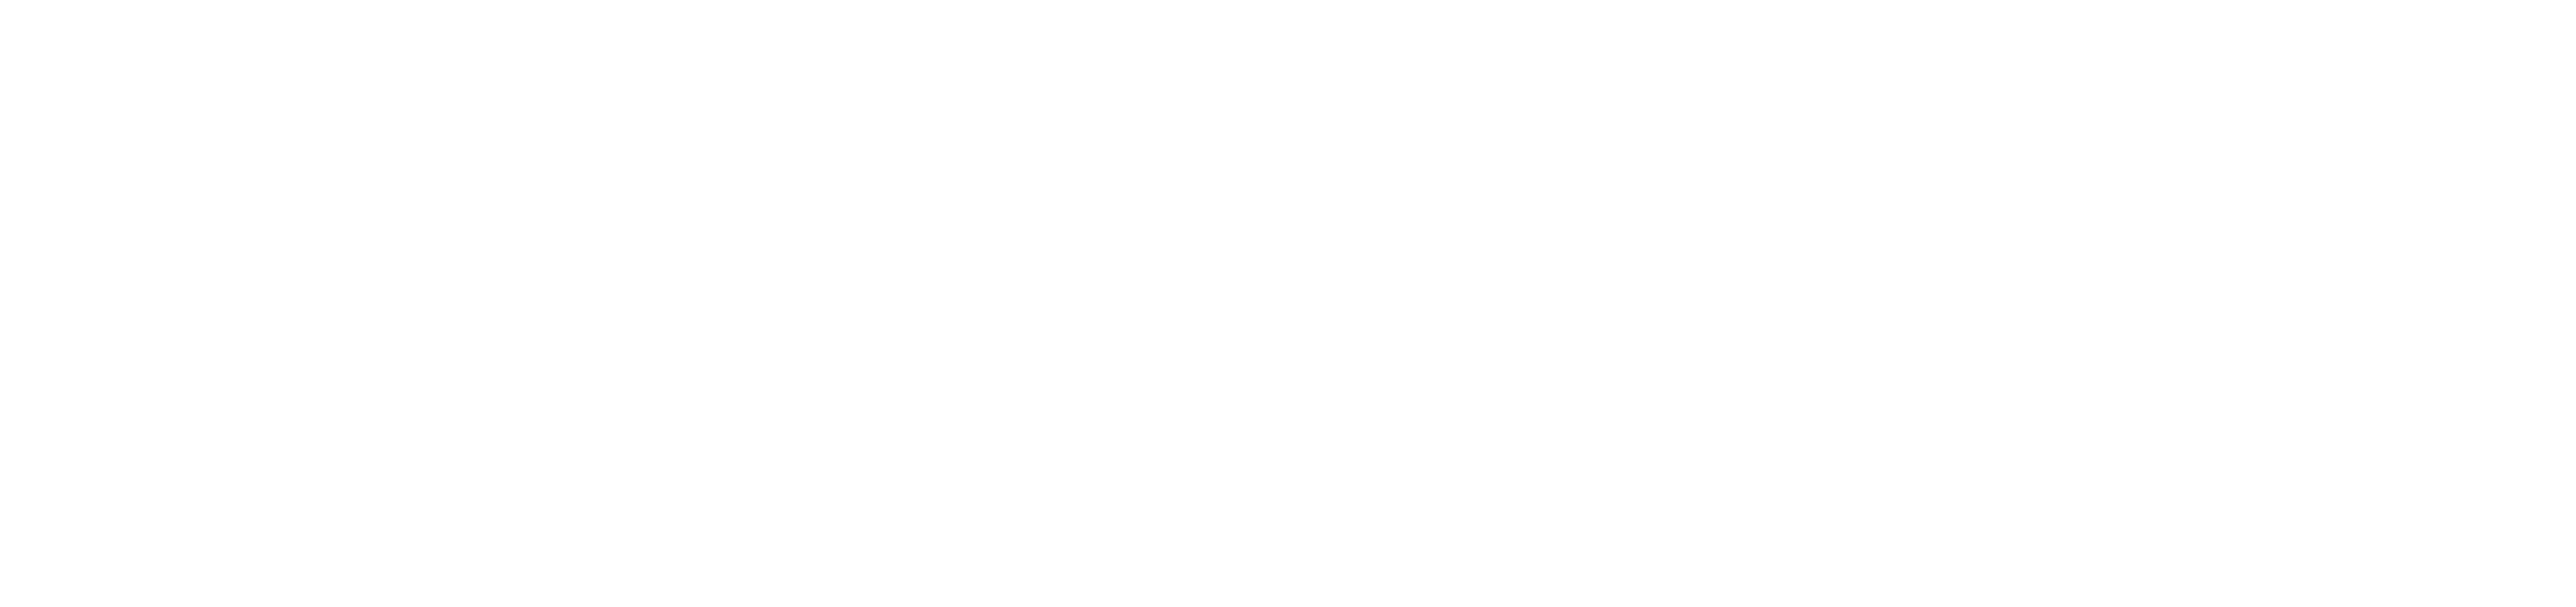 Mackzan launching soon logo